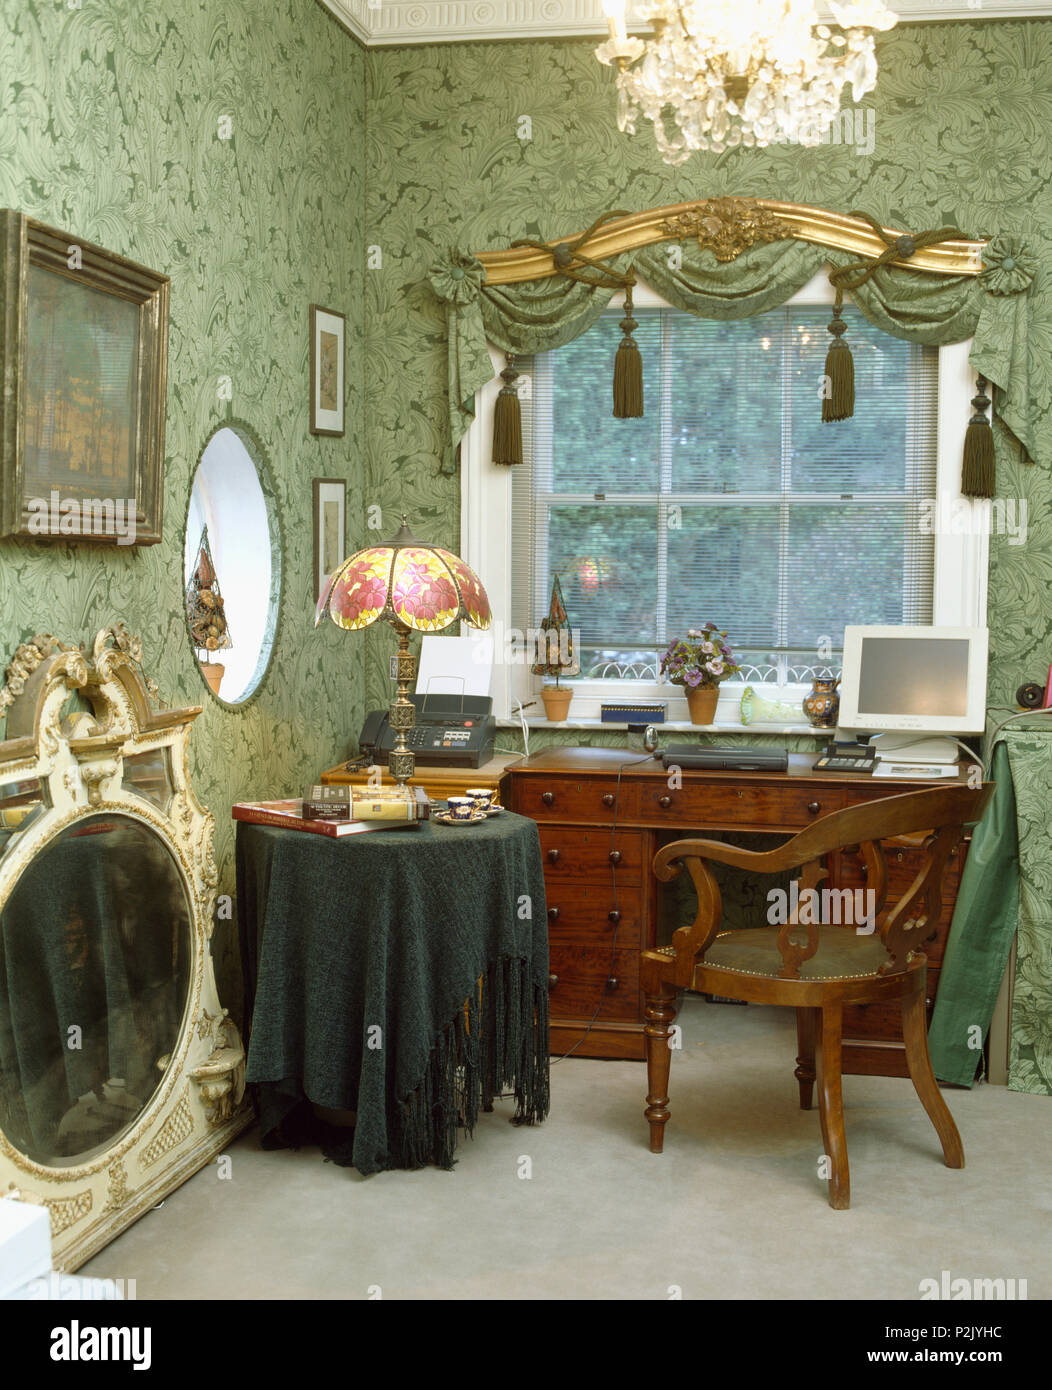 Tiffany Stil Lampe am Tisch mit grünen Chenille Tuch neben antiken  Schreibtisch und Stuhl in alten fashiioned Studie mit grünem Hintergrund  Stockfotografie - Alamy